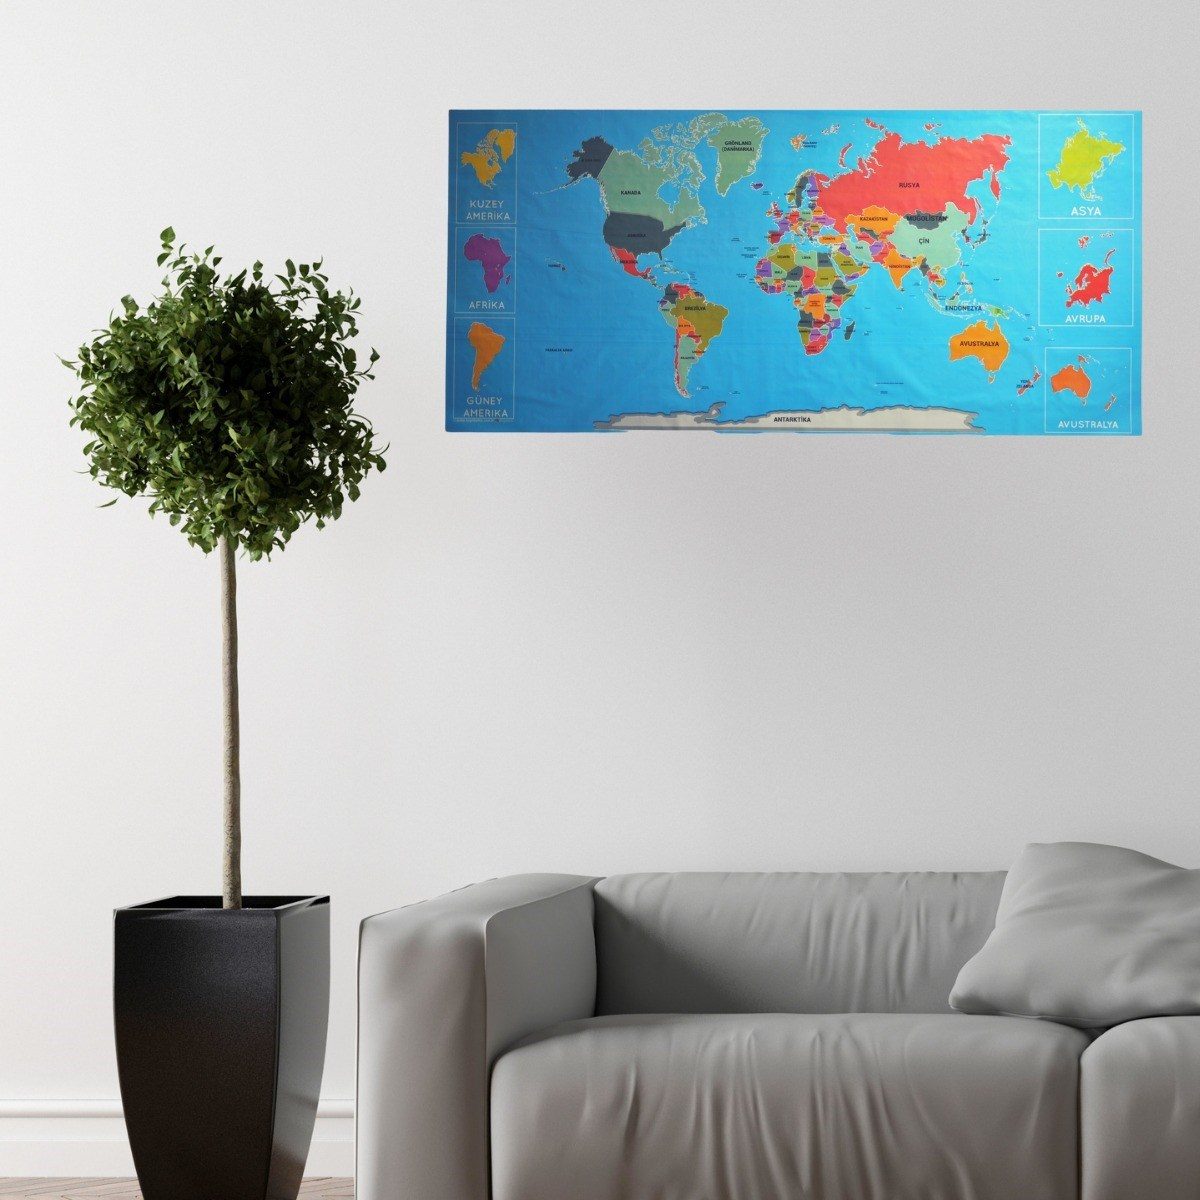 CLZ192 Renkli Atlas Dünya Haritası Manyetik Yapıştırıcı Gerektirmeyen Duvar Stickerı 118 CM * 56 CM (4172)